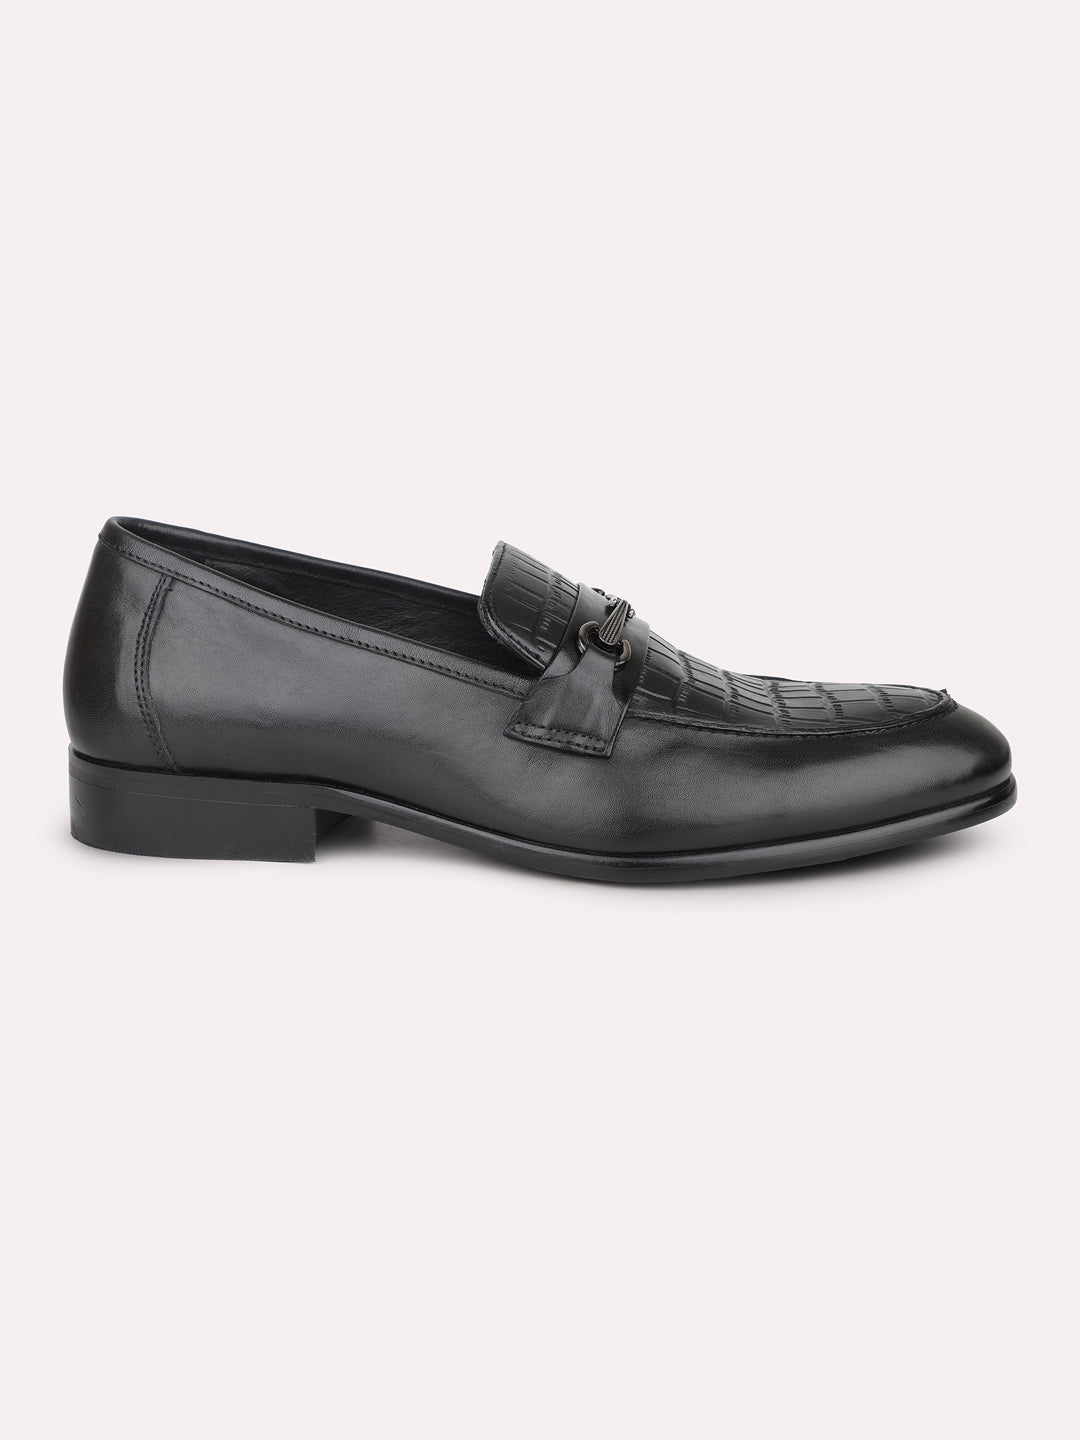 Atesber Black Textured Fomral Moccasin Shoes For Men